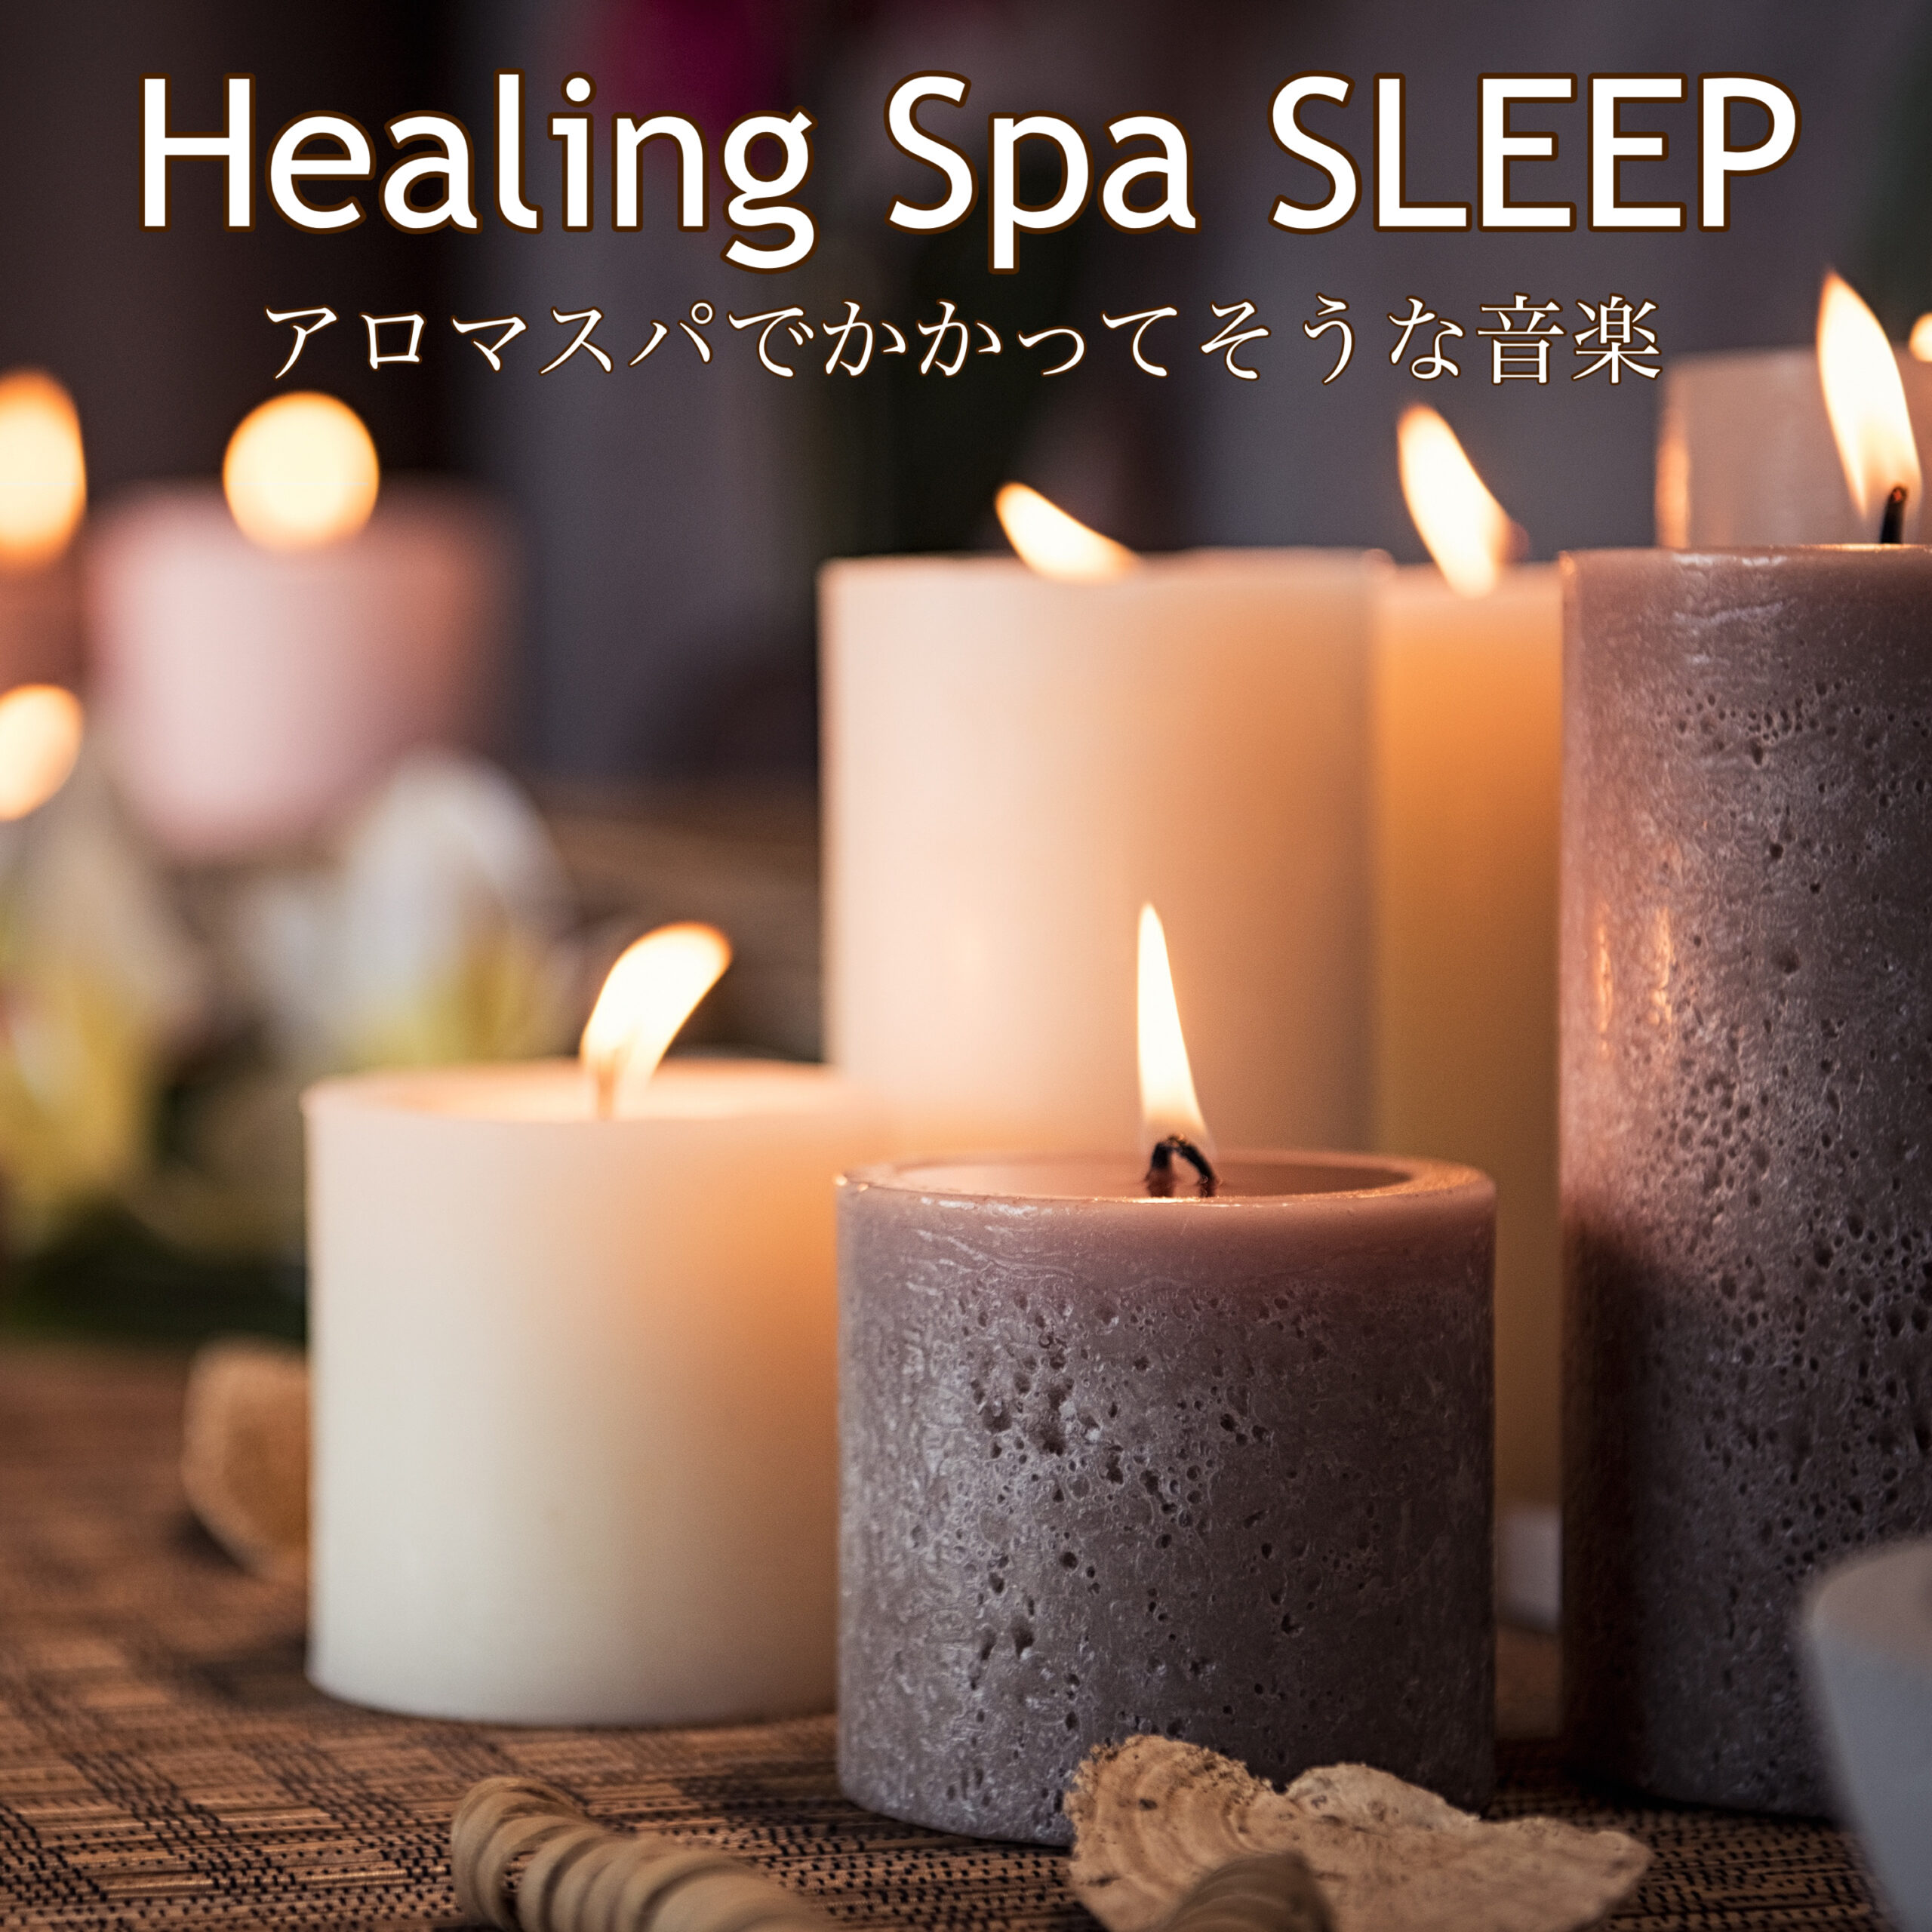 Healing Spa SLEEP アロマスパでかかってそうな音楽 ガンクドラムの響きで癒される睡眠導入BGM まったりリラックス用 ぐっすり睡眠用 テレワーク作業用